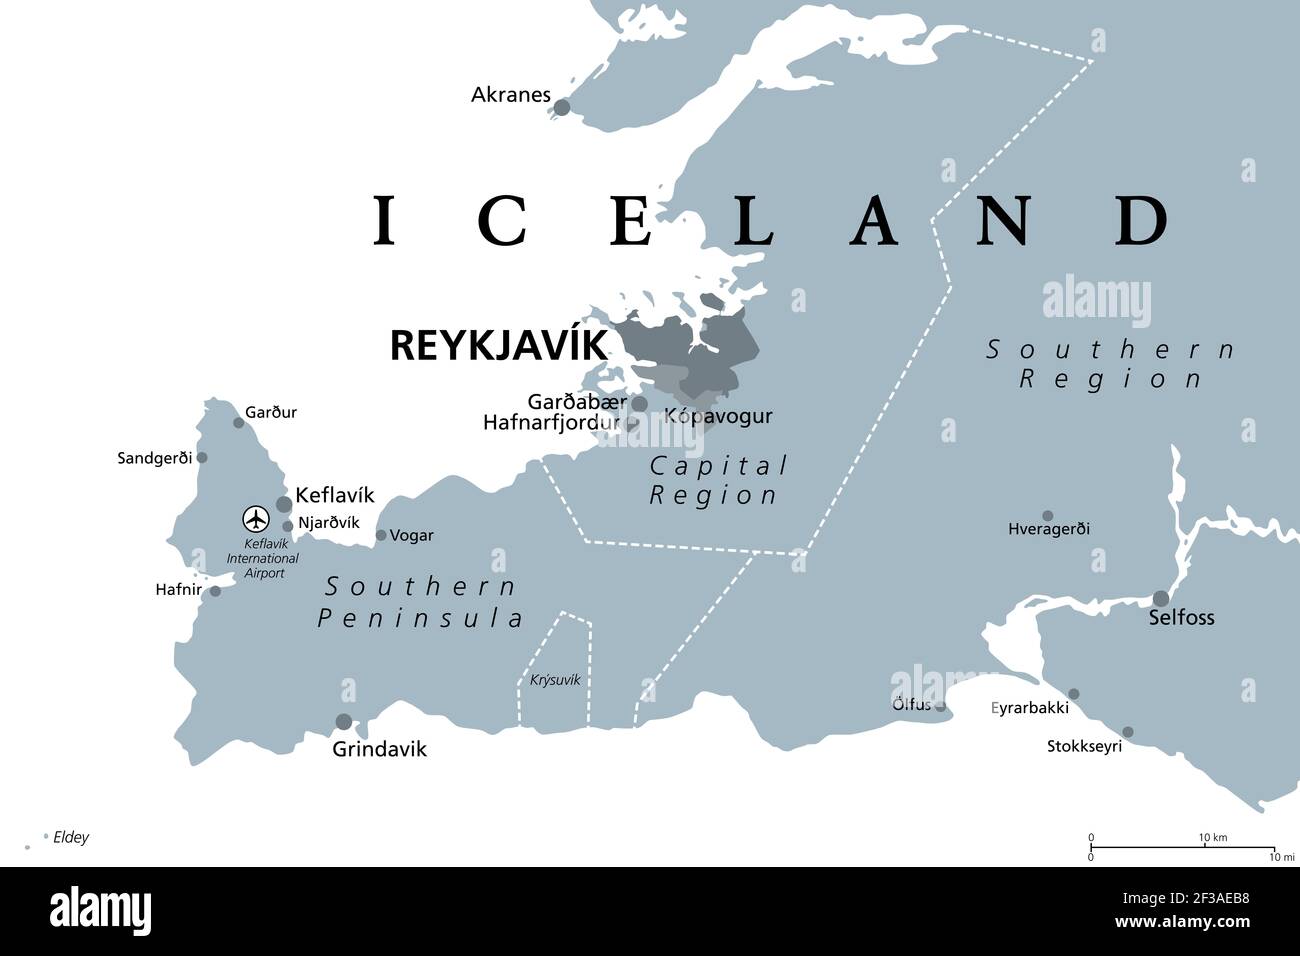 Islande, région de la capitale et Péninsule du Sud, carte politique grise. Reykjavik et ses environs, avec la péninsule de Reykjanes, une région du sud-ouest de l'Islande. Banque D'Images